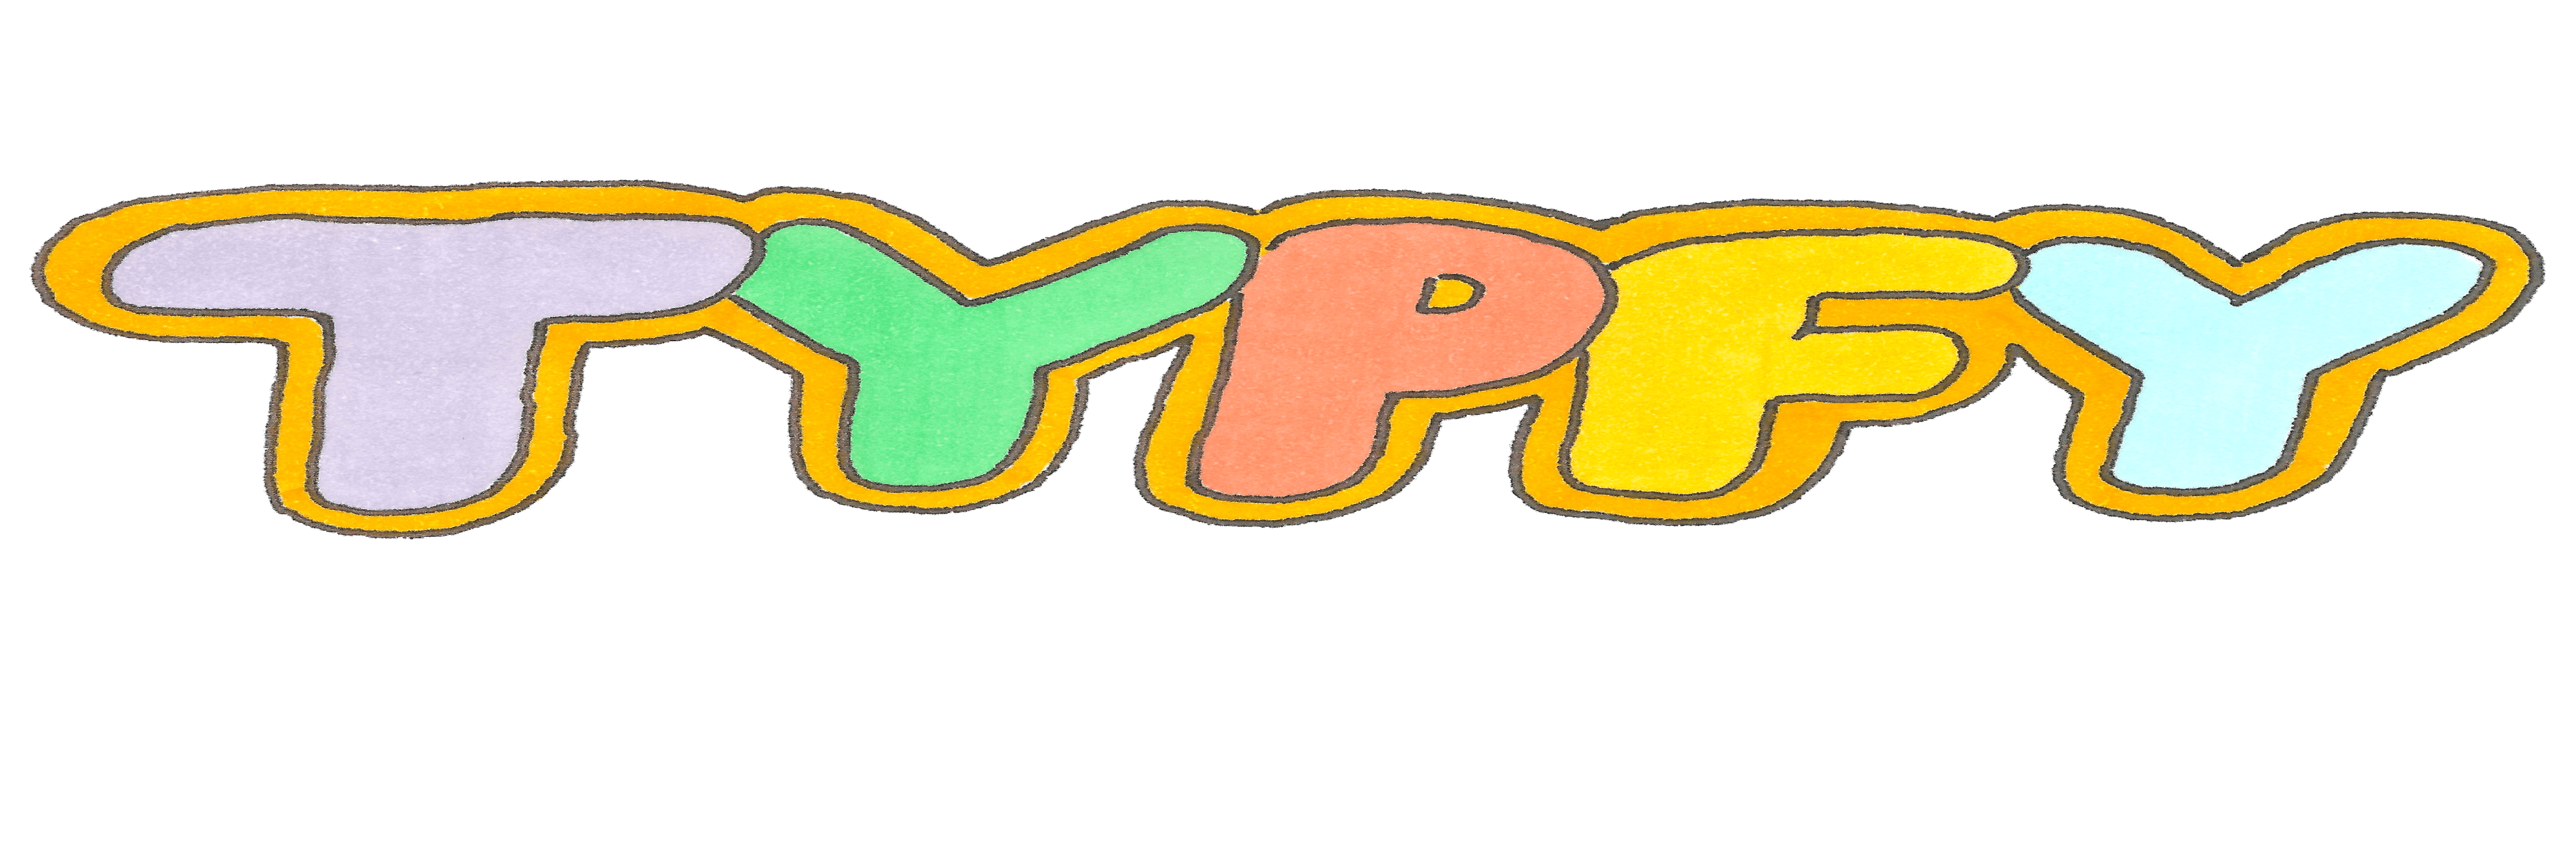 TYPFY banner